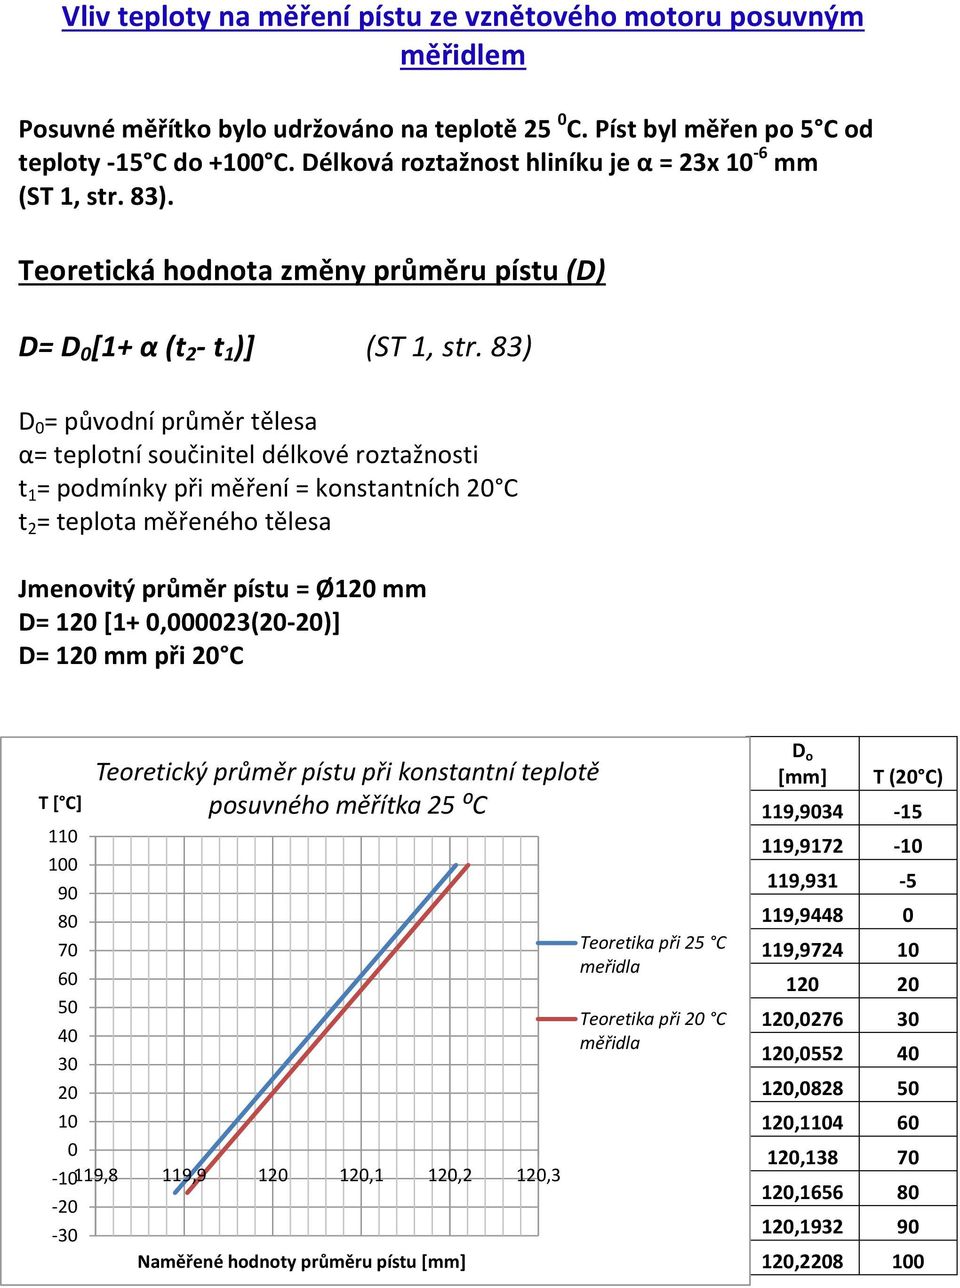 83) D = původní průměr tělesa α= teplotní součinitel délkové roztažnosti t 1 = podmínky při měření = konstantních C t 2 = teplota měřeného tělesa Jmenovitý průměr pístu = Ø1 mm D= 1 [1+,23(-)] D= 1